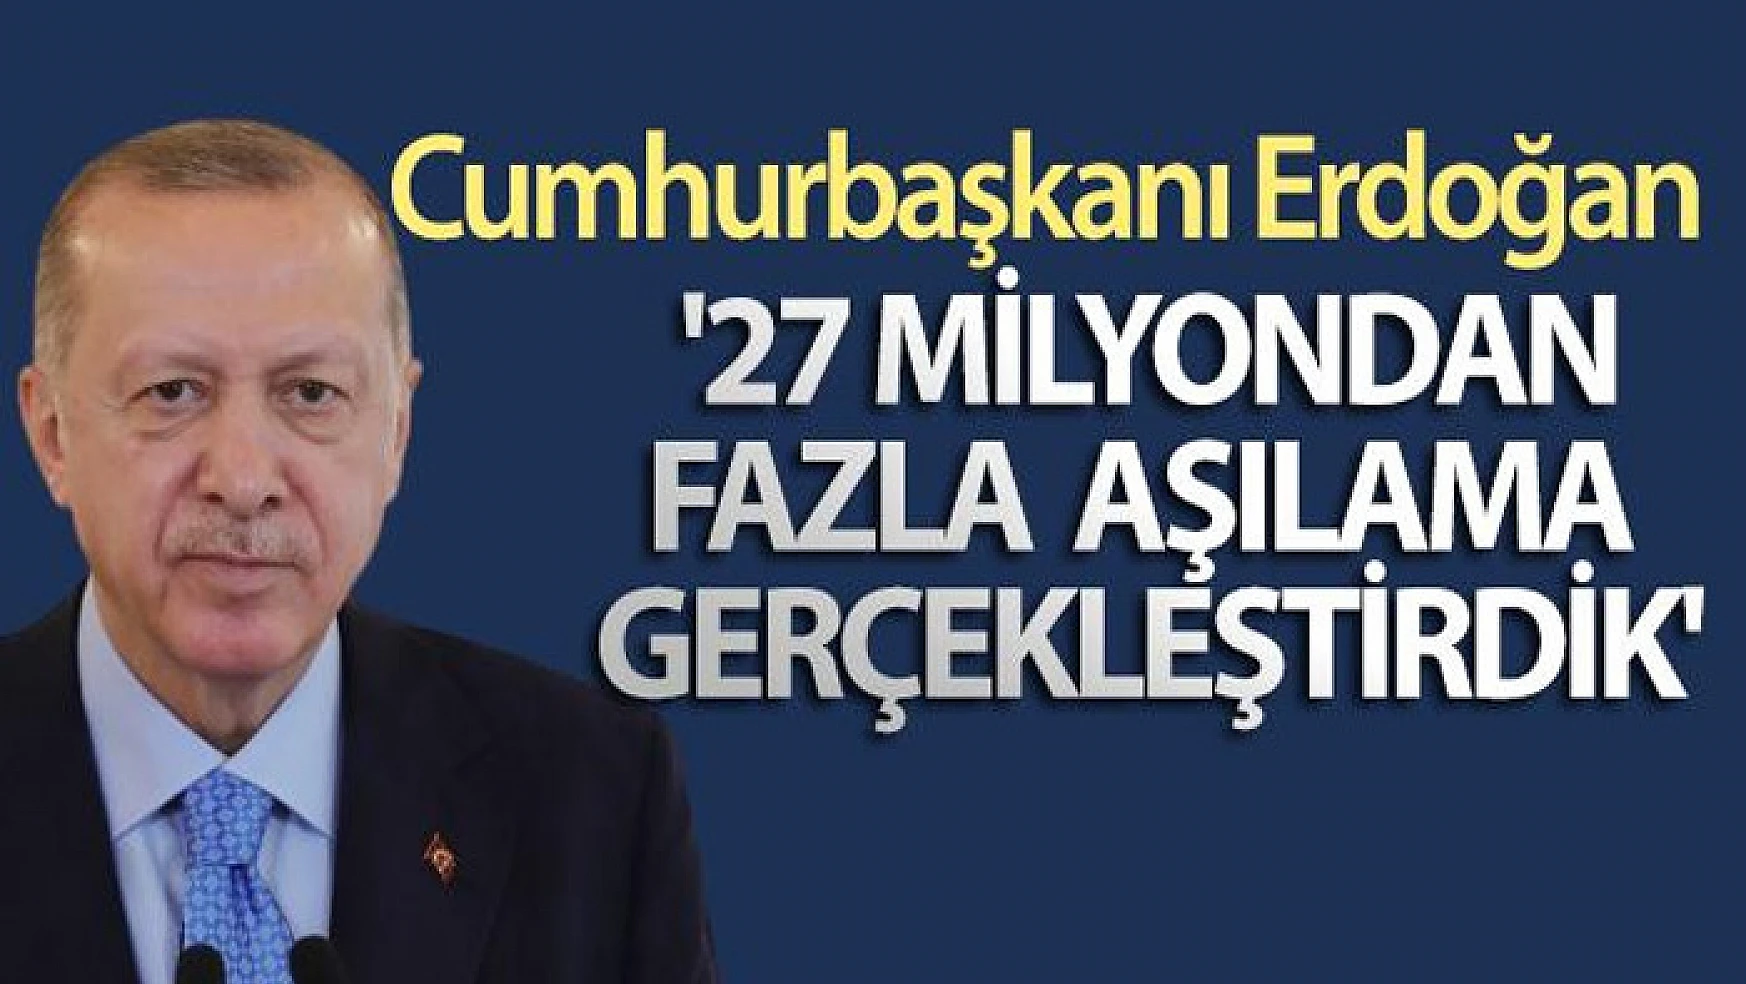 Cumhurbaşkanı Erdoğan: '27 milyondan fazla aşılama gerçekleştirdik'